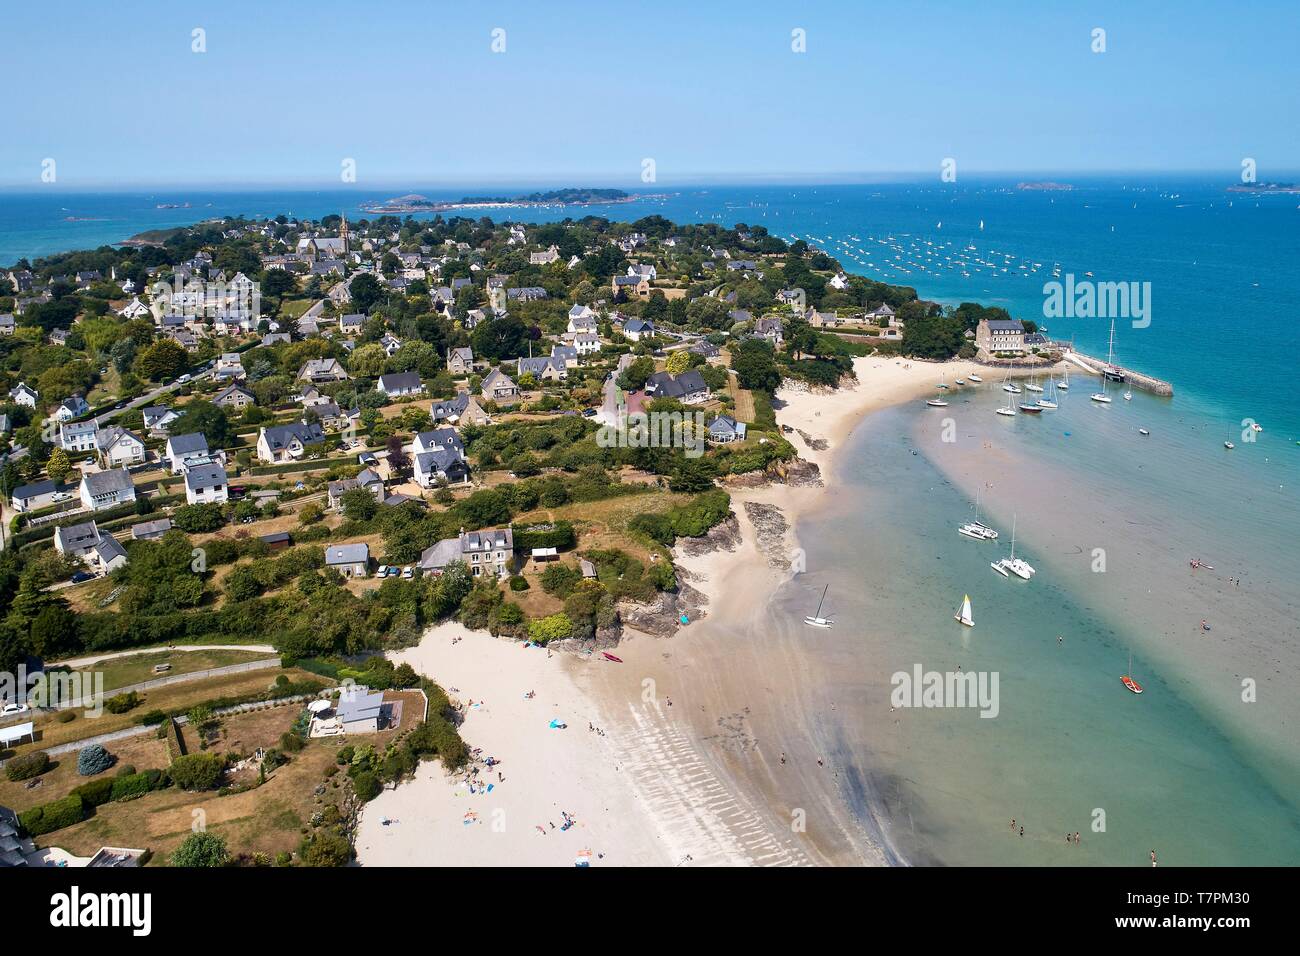 France, Cotes d'Armor, Cote d'Emeraude (Emerald Coast), Saint Jacut de la Mer, beach of Pissotte and port of Chatelet (aerial view) Stock Photo